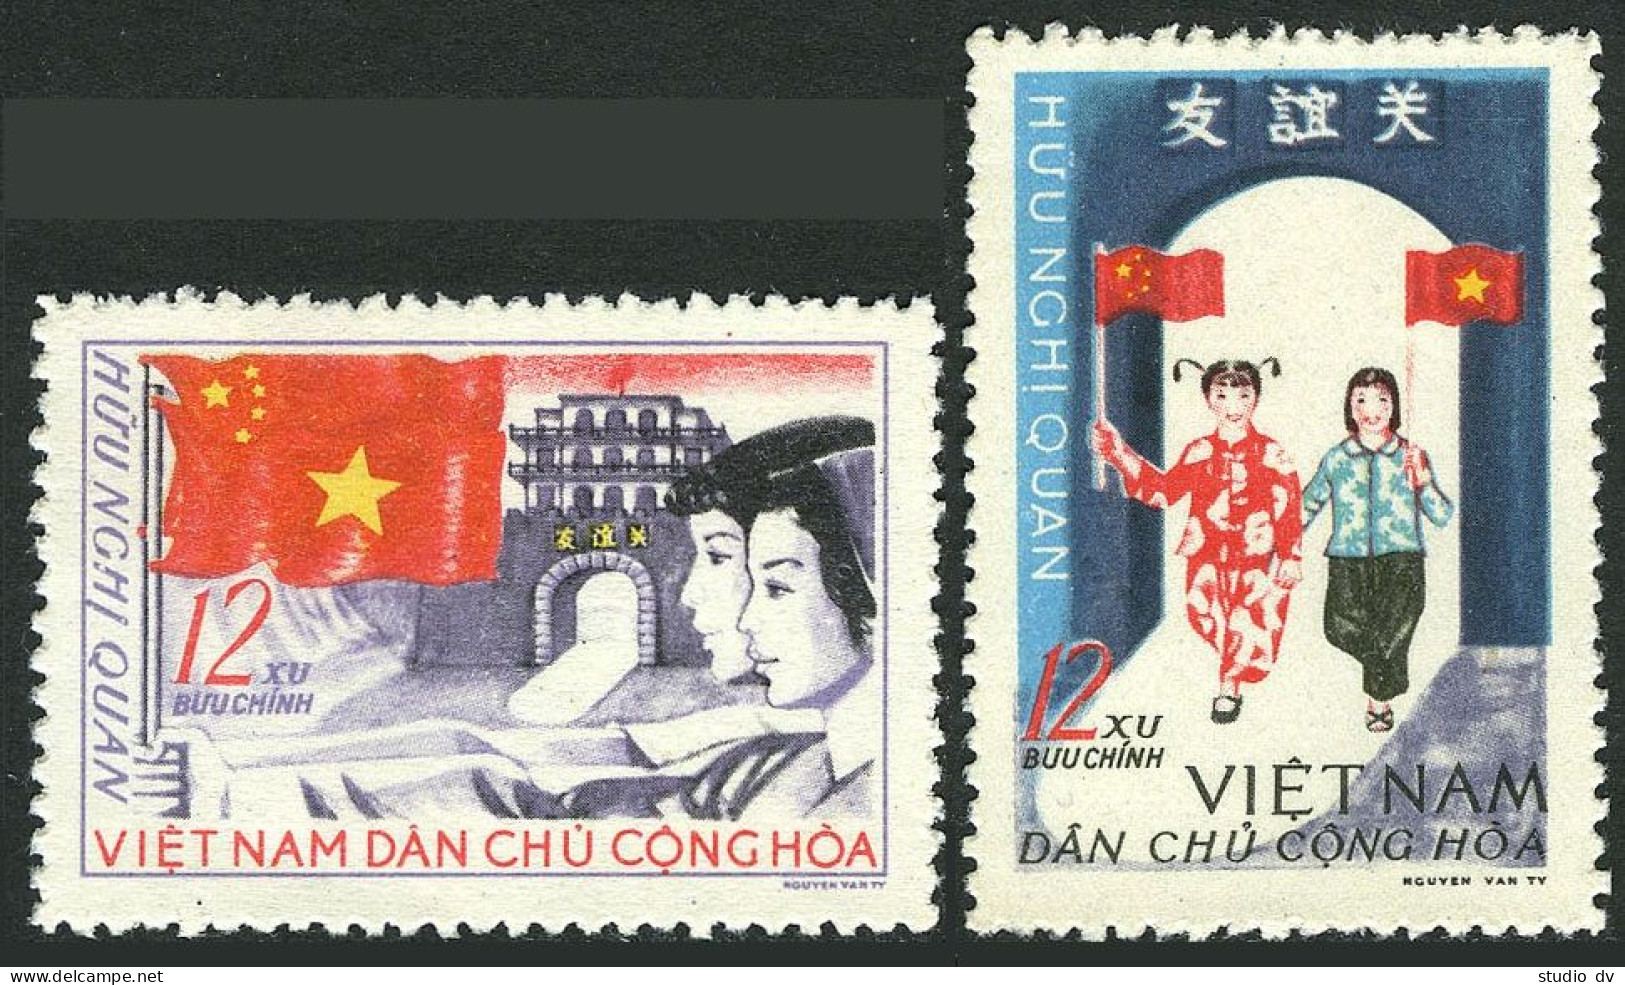 Viet Nam 383-384,MNH.Michel 399-400. Viet Nam - China Friendship,1965. - Viêt-Nam